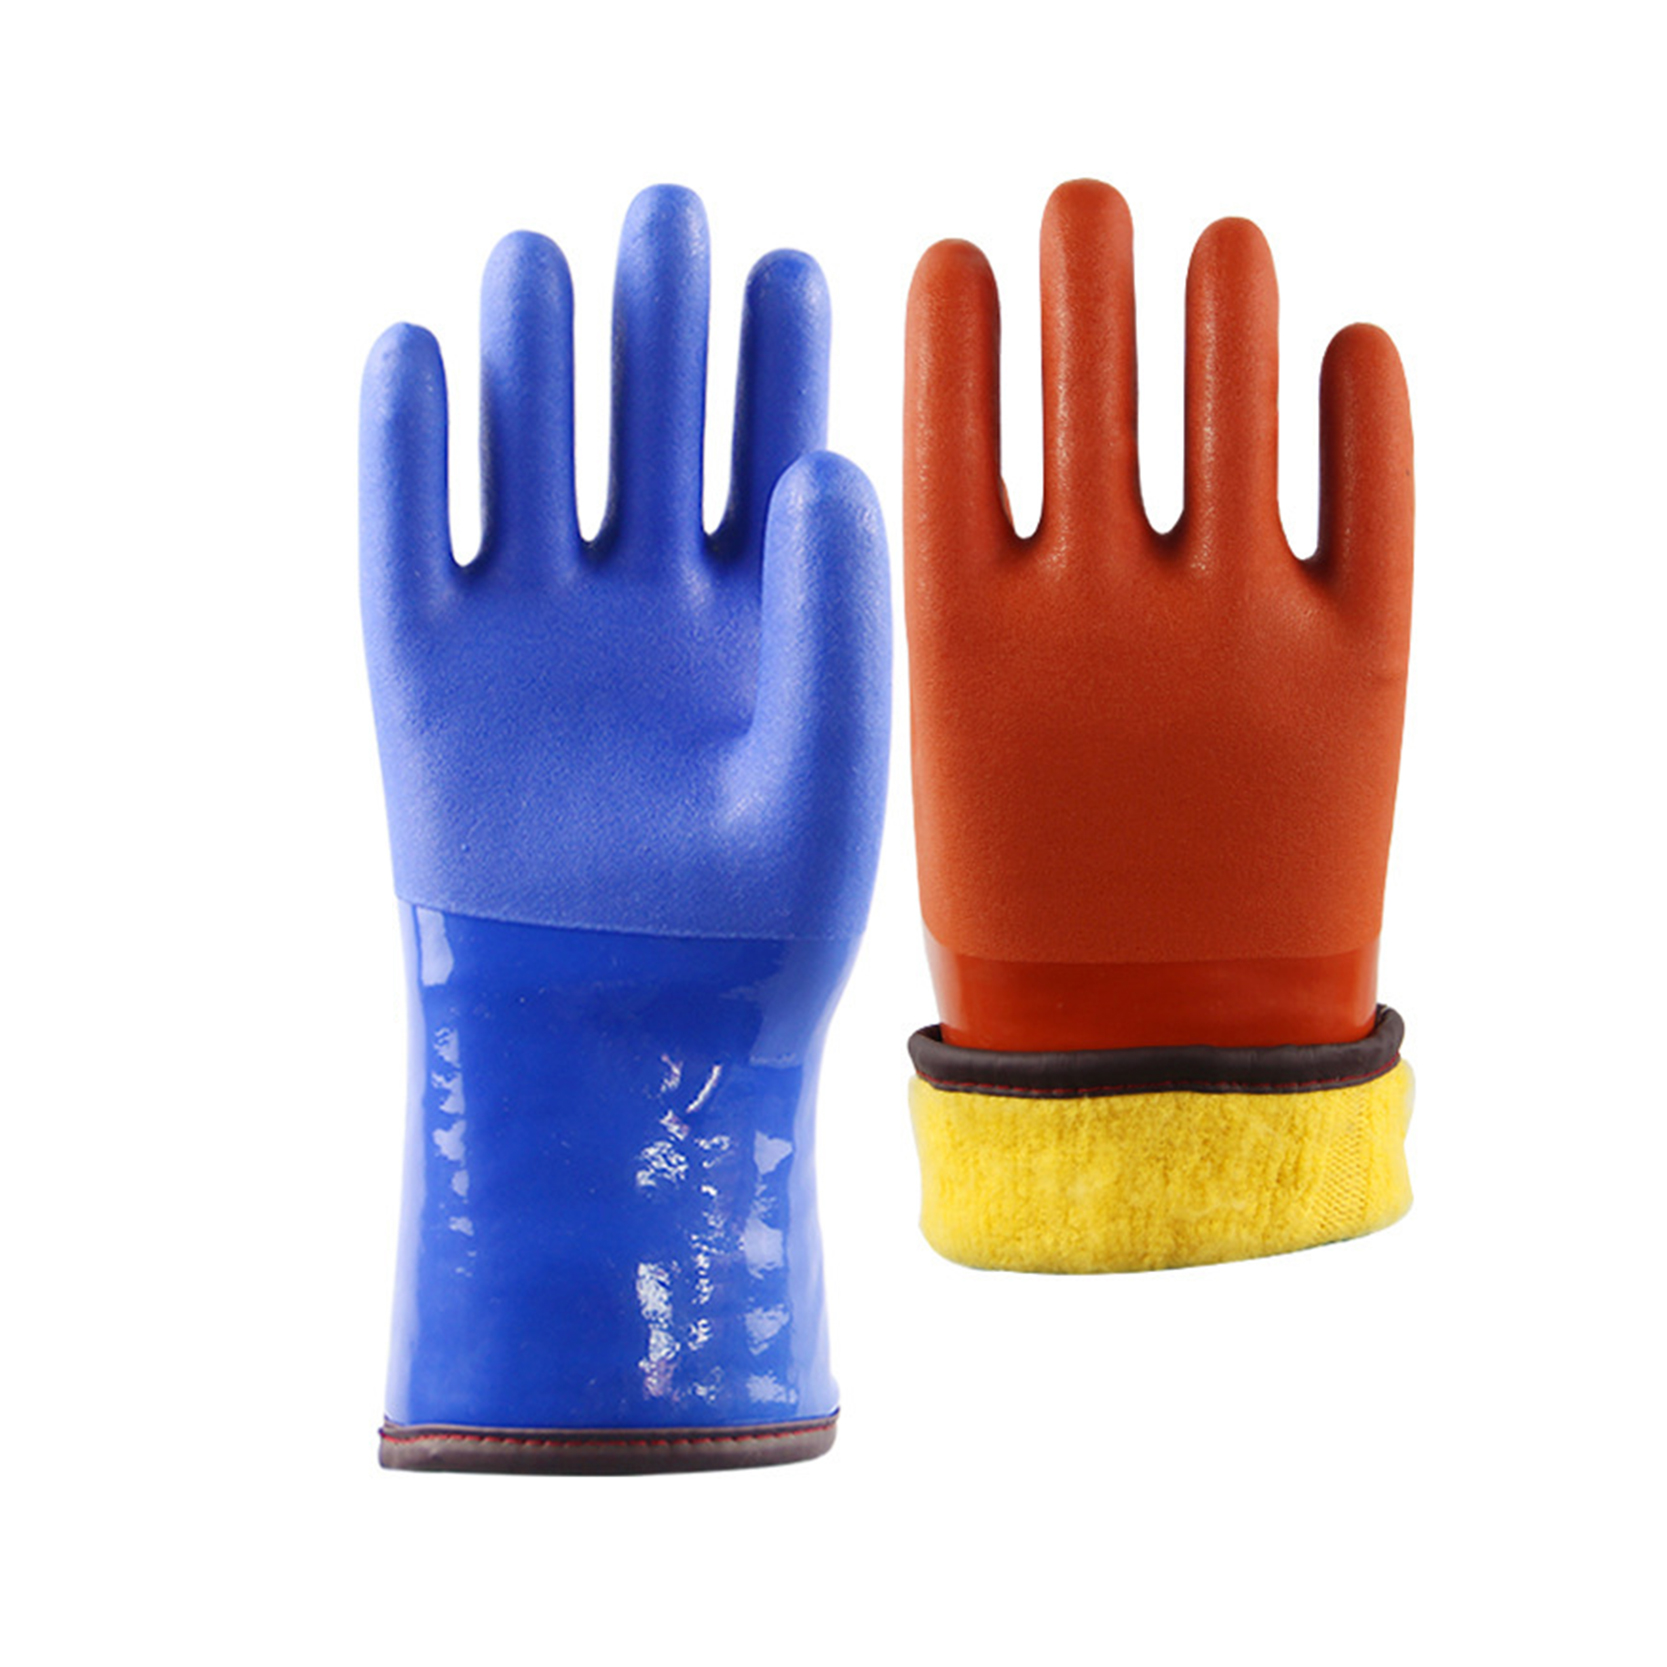 Радне рукавице са ПВЦ пресвлаком за тешке услове рада Индустријске рукавице отпорне на хемикалије и течности